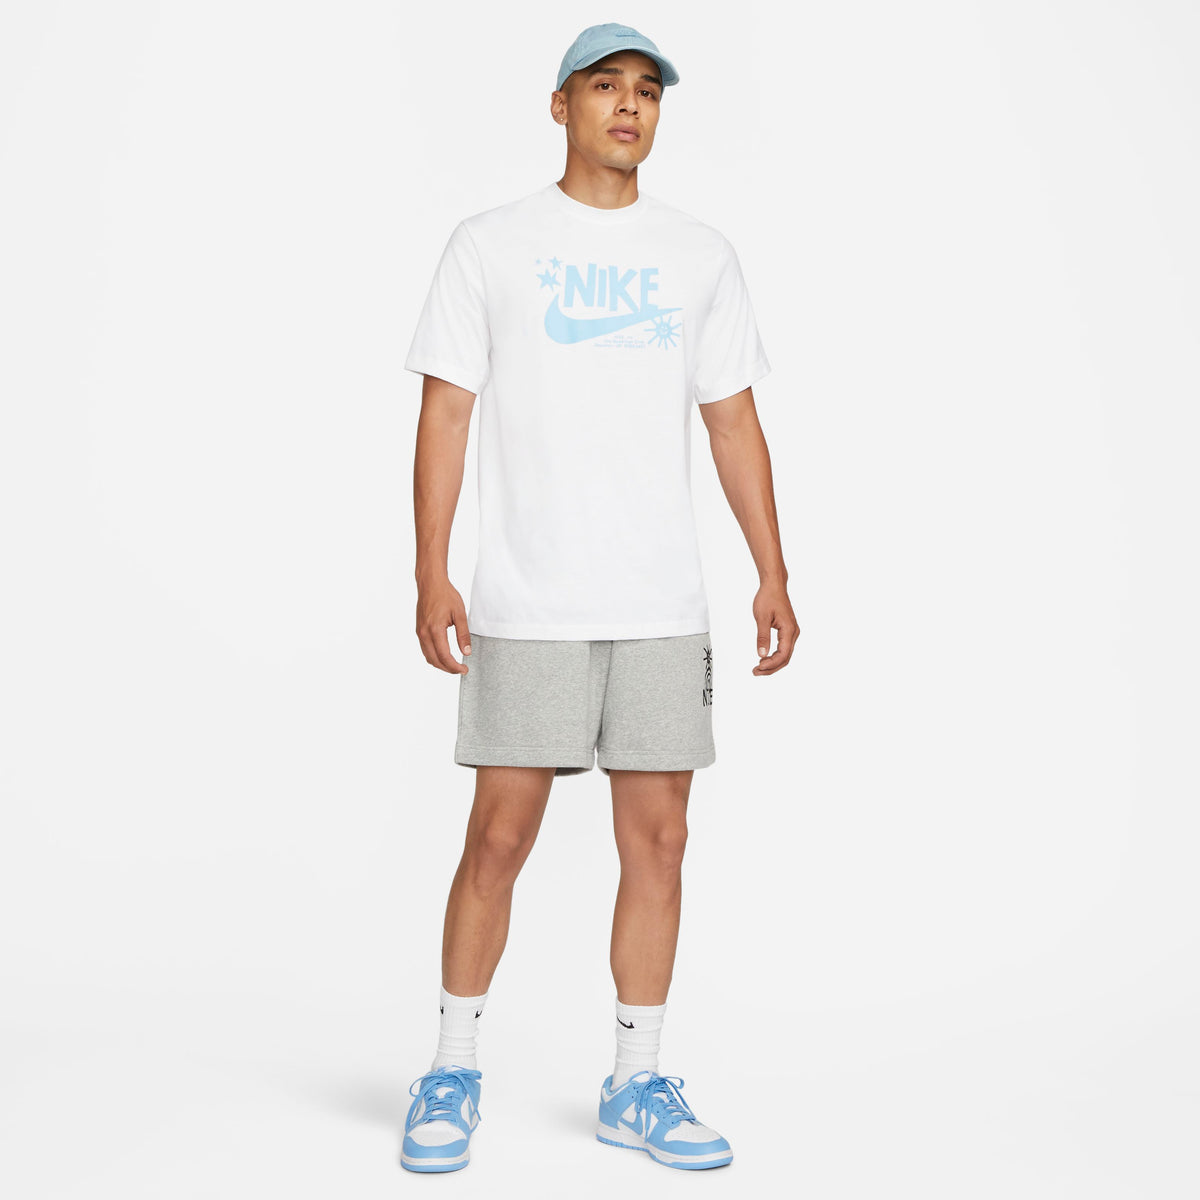 Polera Nike Sportswear clásico Blanco